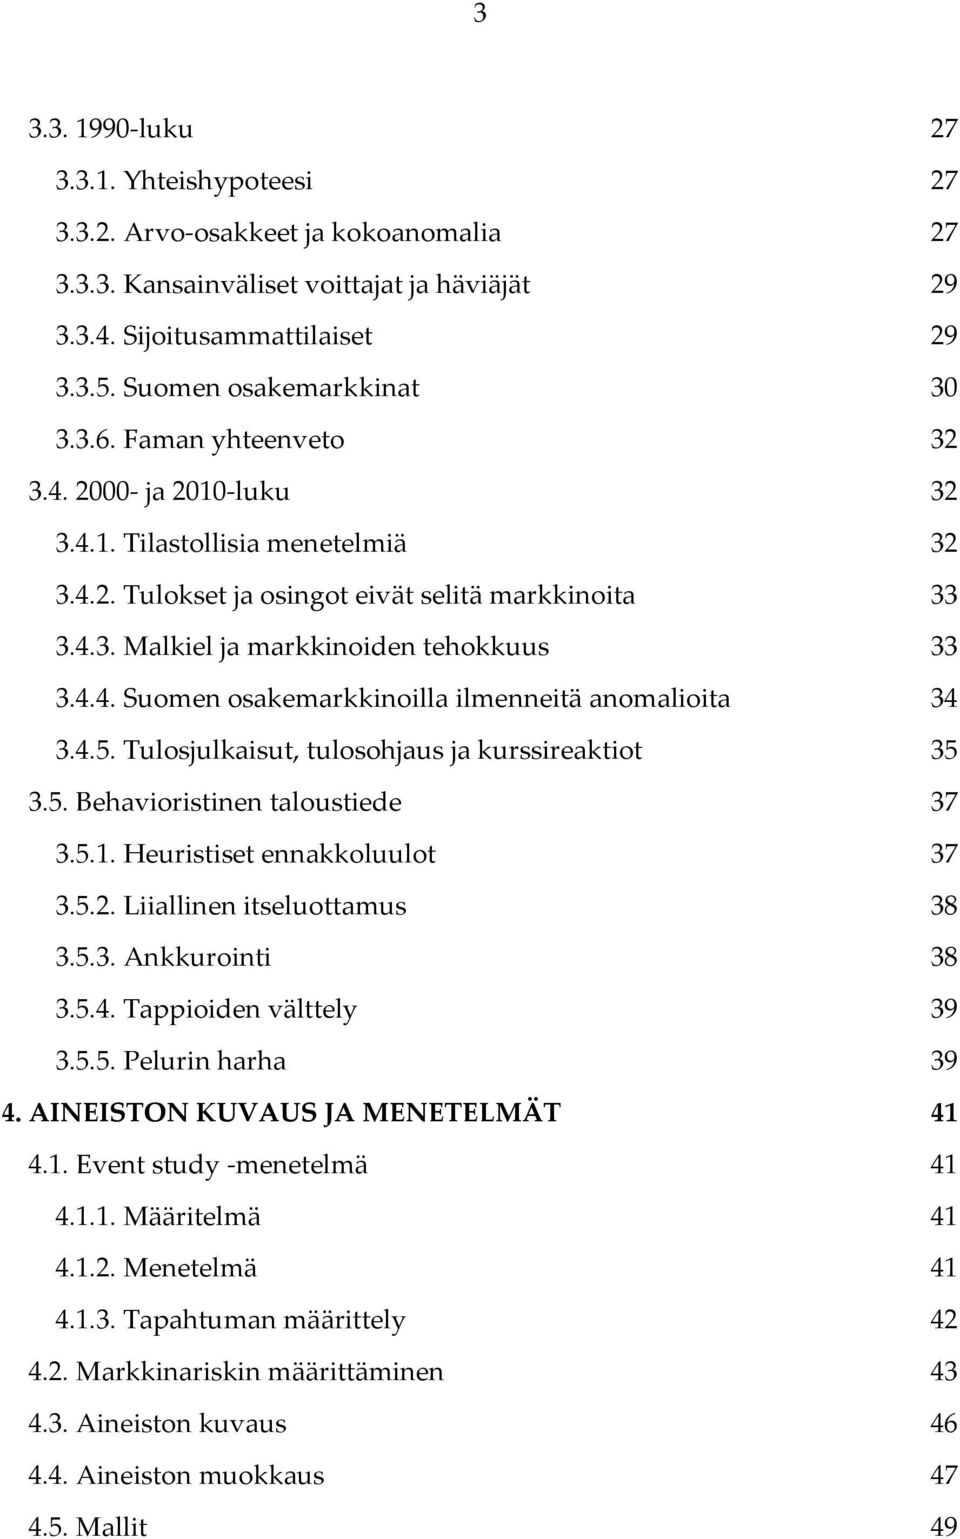 .. 33 3.4.4. Suomen osakemarkkinoilla ilmenneitä anomalioita... 34 3.4.5. Tulosjulkaisut, tulosohjaus ja kurssireaktiot... 35 3.5. Behavioristinen taloustiede... 37 3.5.1. Heuristiset ennakkoluulot.